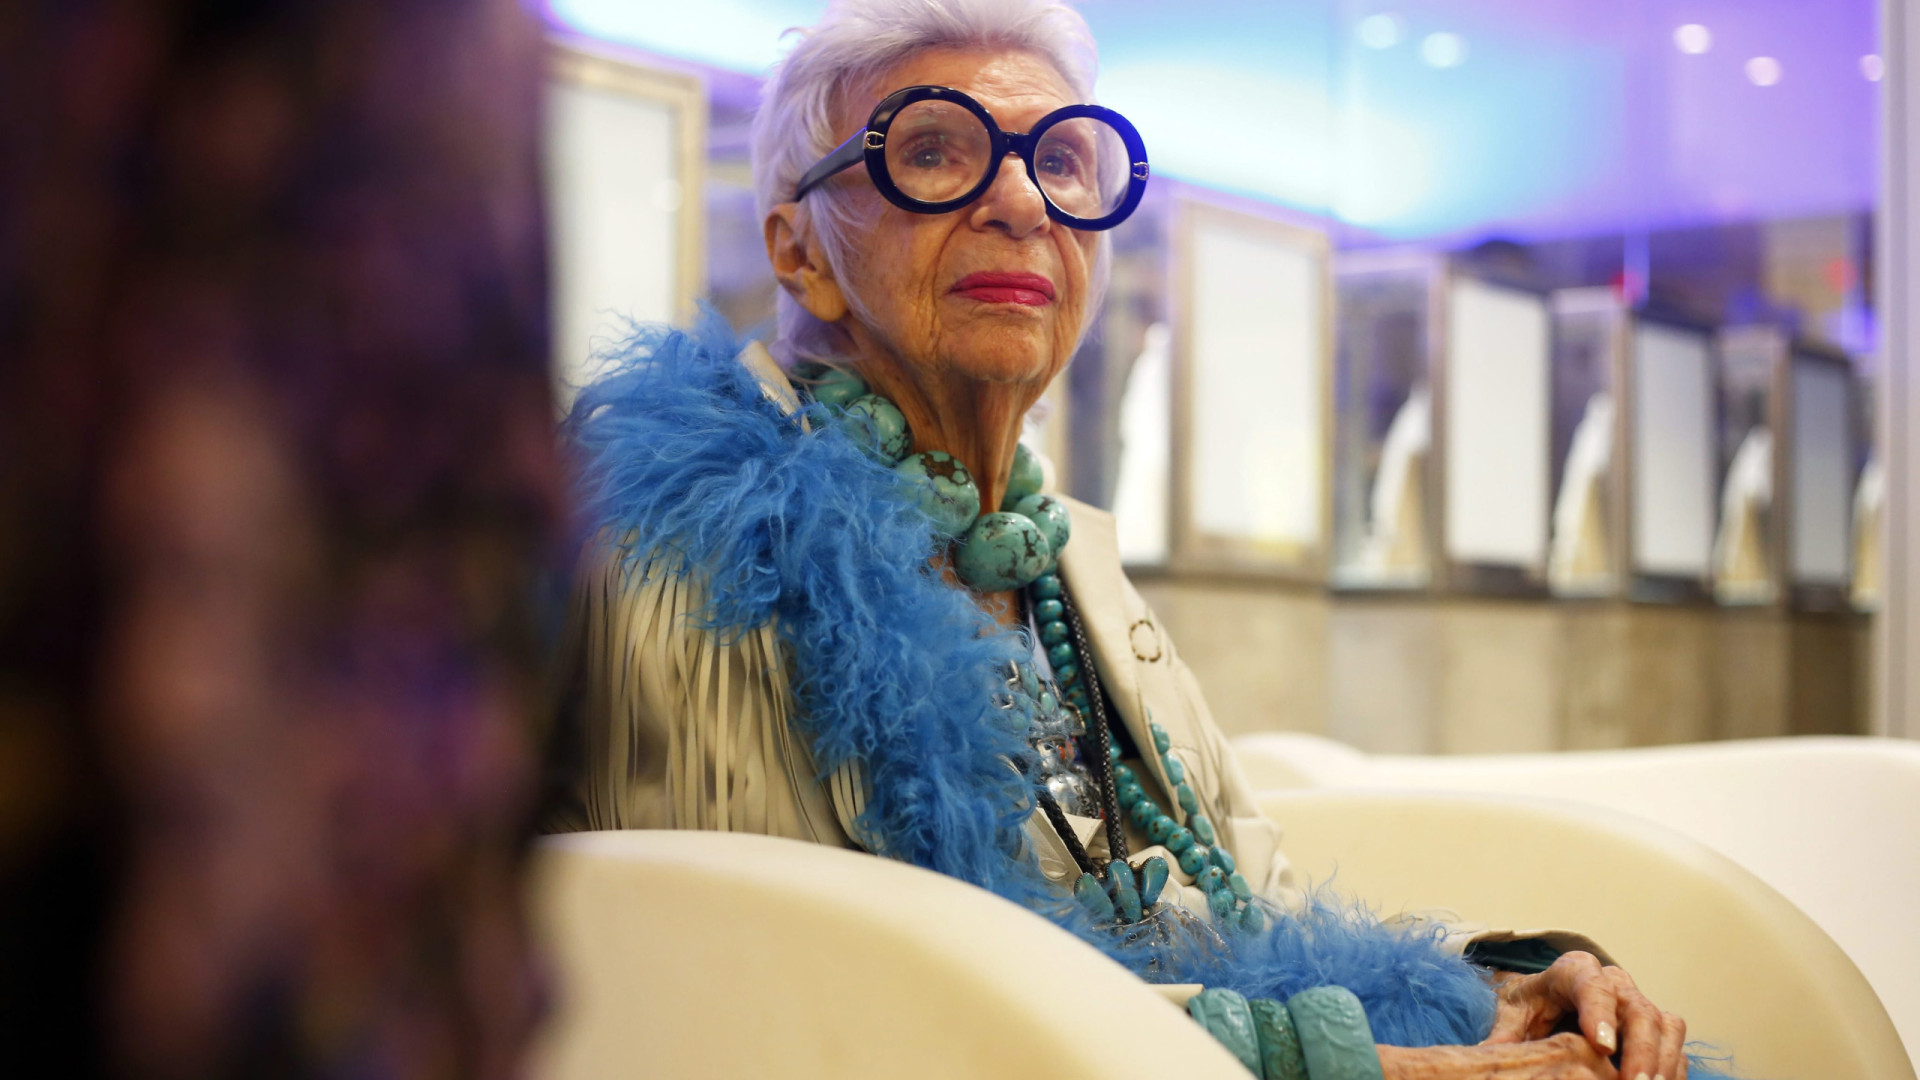 Morre Iris Apfel, ícone da moda, aos 102 anos